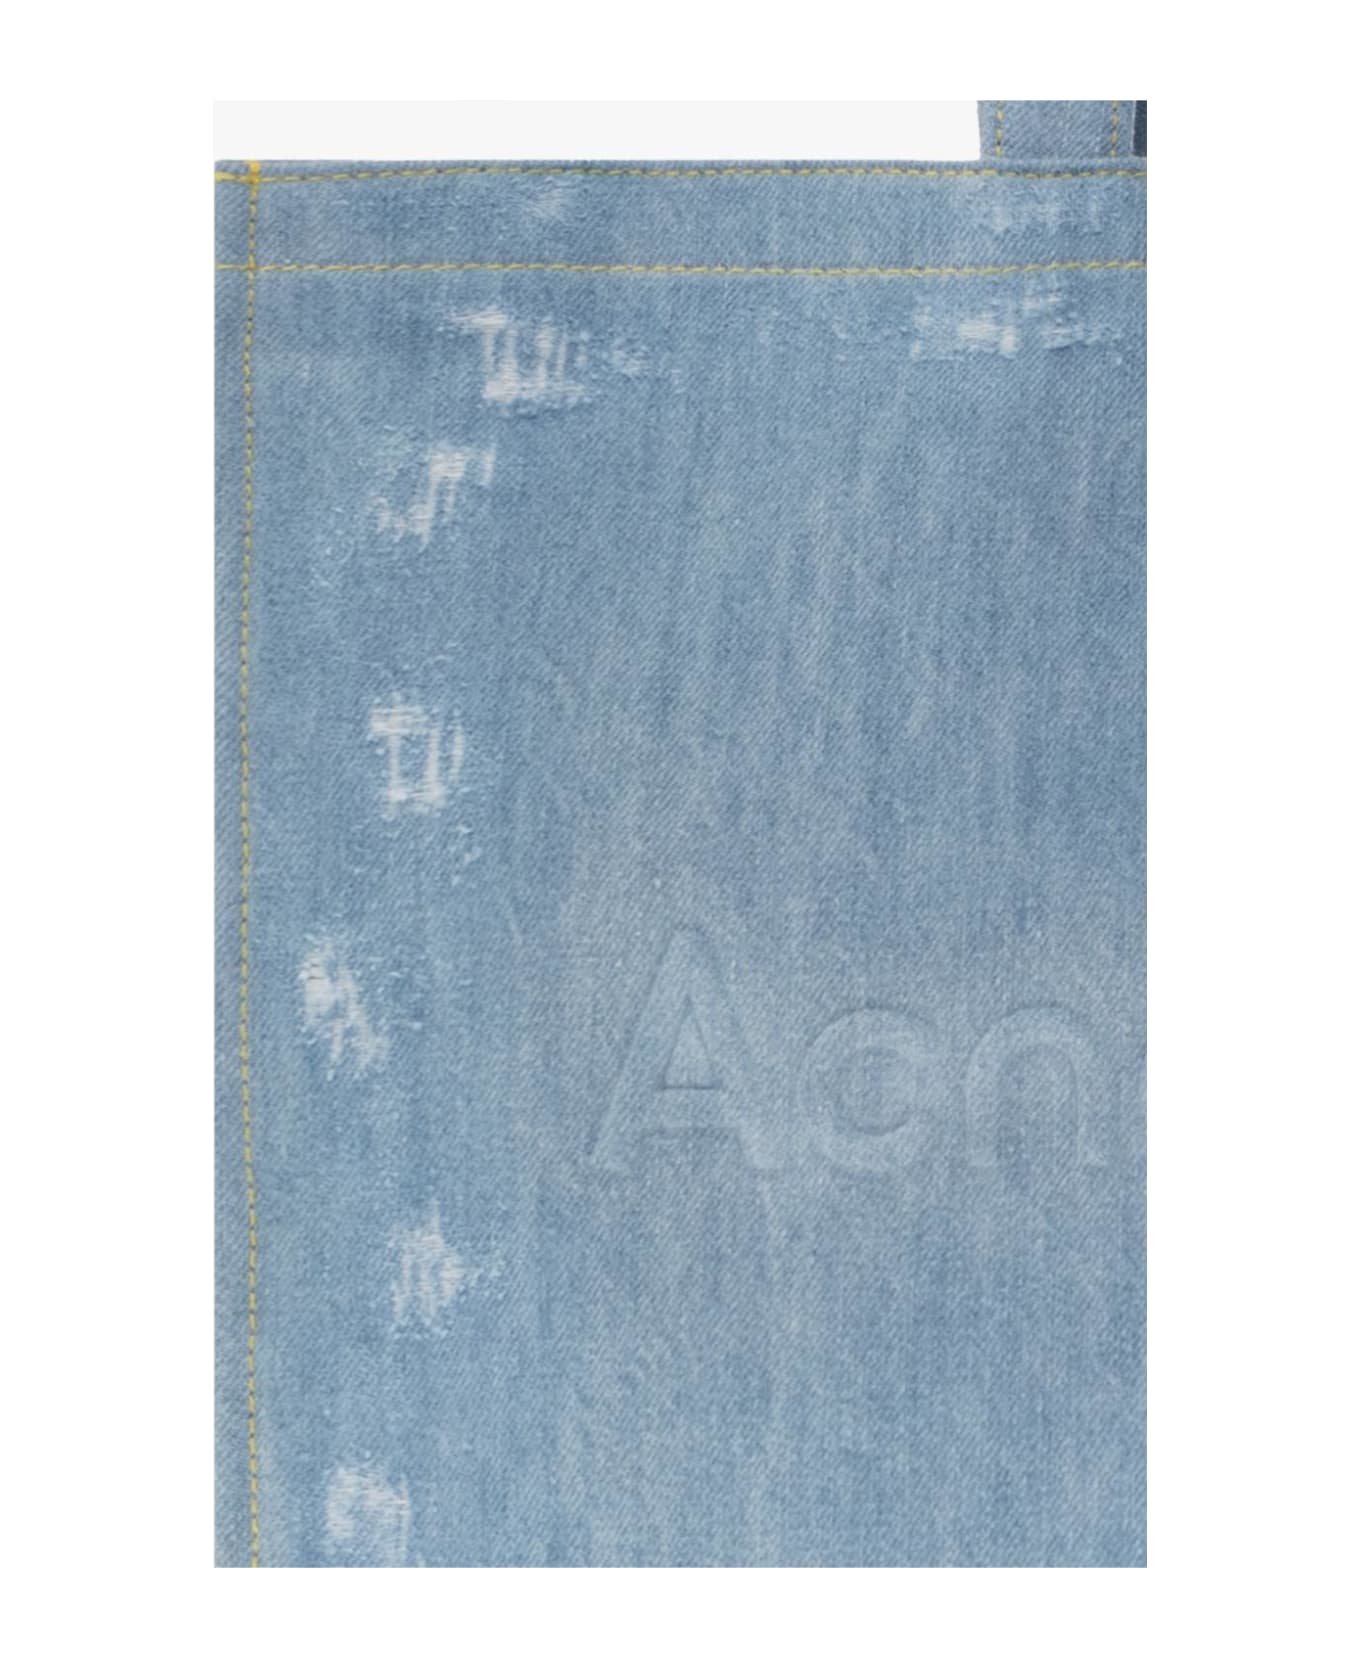 Acne Studios Denim Shopper Bag - Light blue